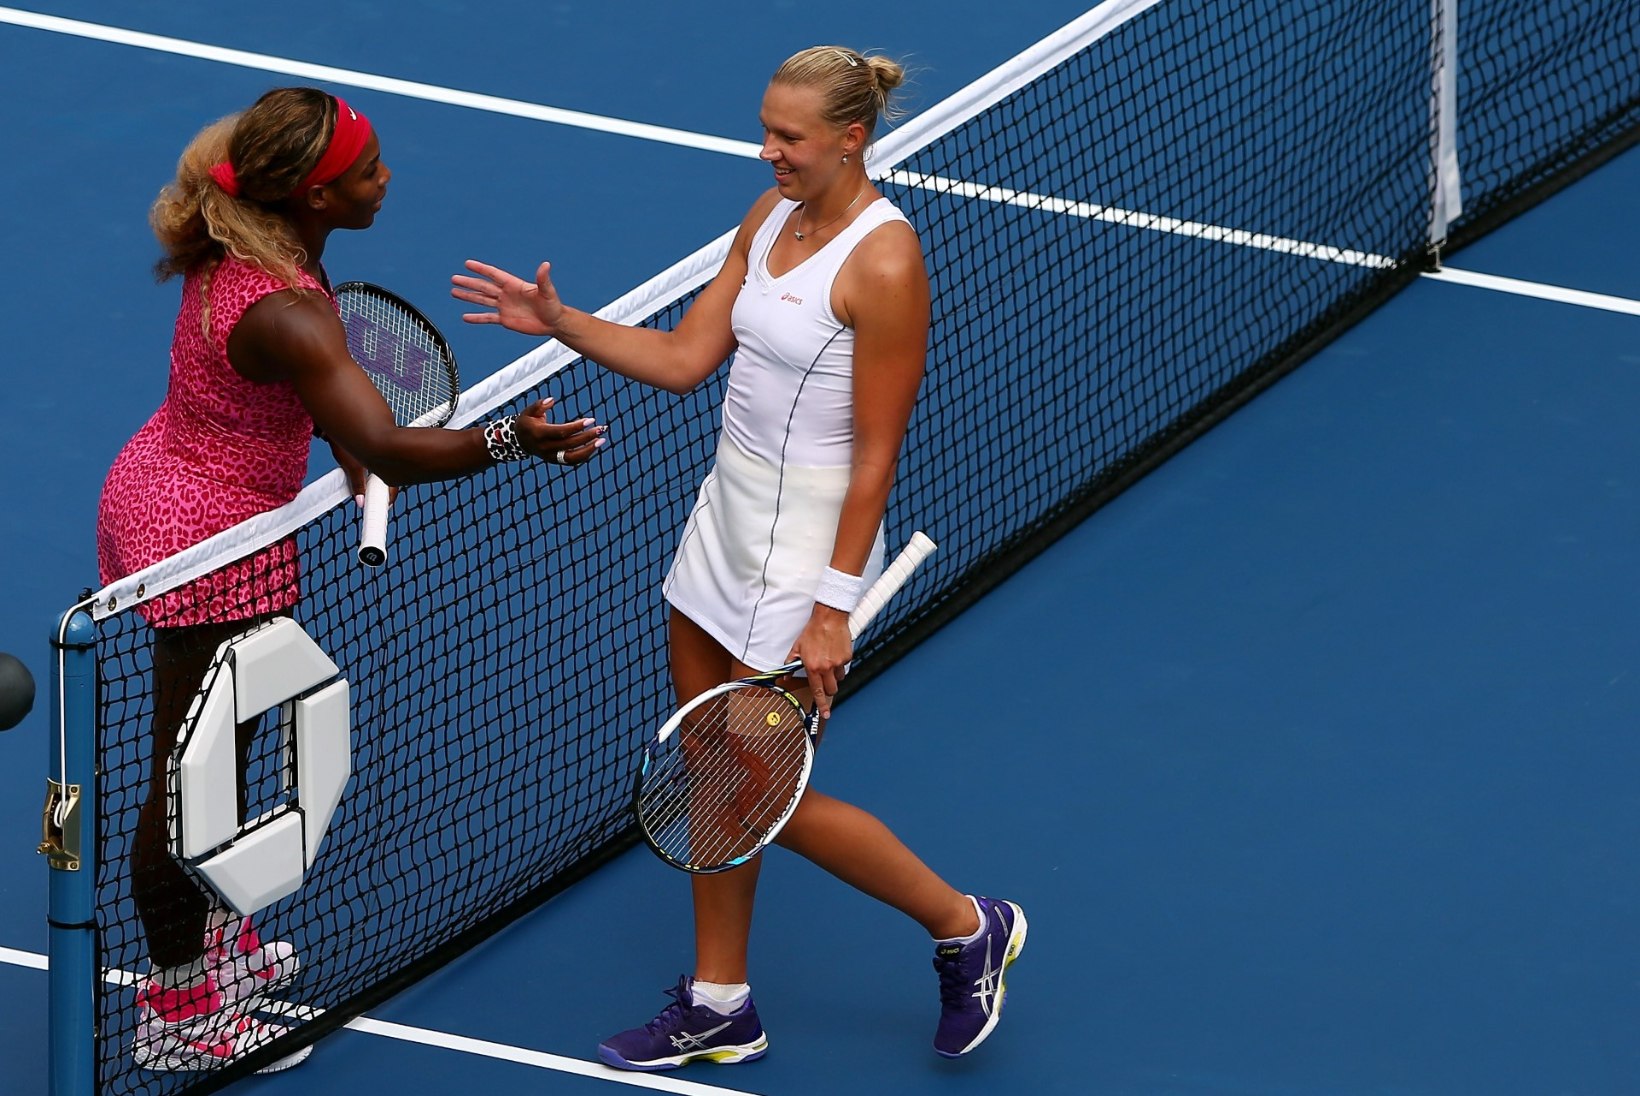 Suur matš tulebki: Kaia Kanepi kohtub Serena Williamsiga!